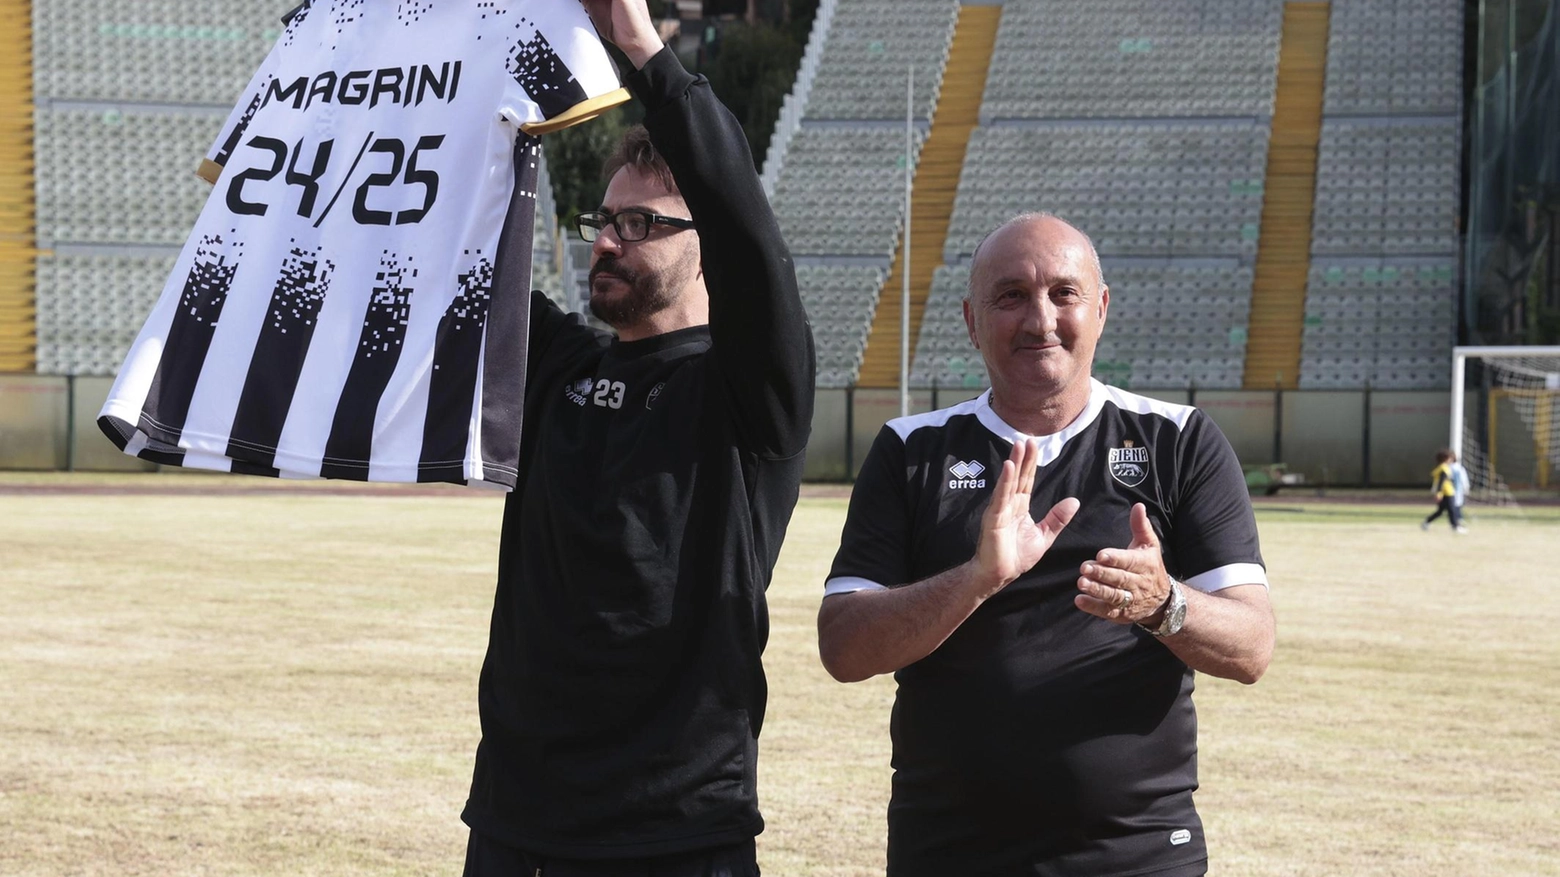 Il presidente del Siena annuncia il rinnovo del contratto del tecnico Lamberto Magrini, elogiato dai tifosi per il successo della squadra. Magrini si dice fiducioso per il futuro e ringrazia per l'affetto ricevuto dalla città.